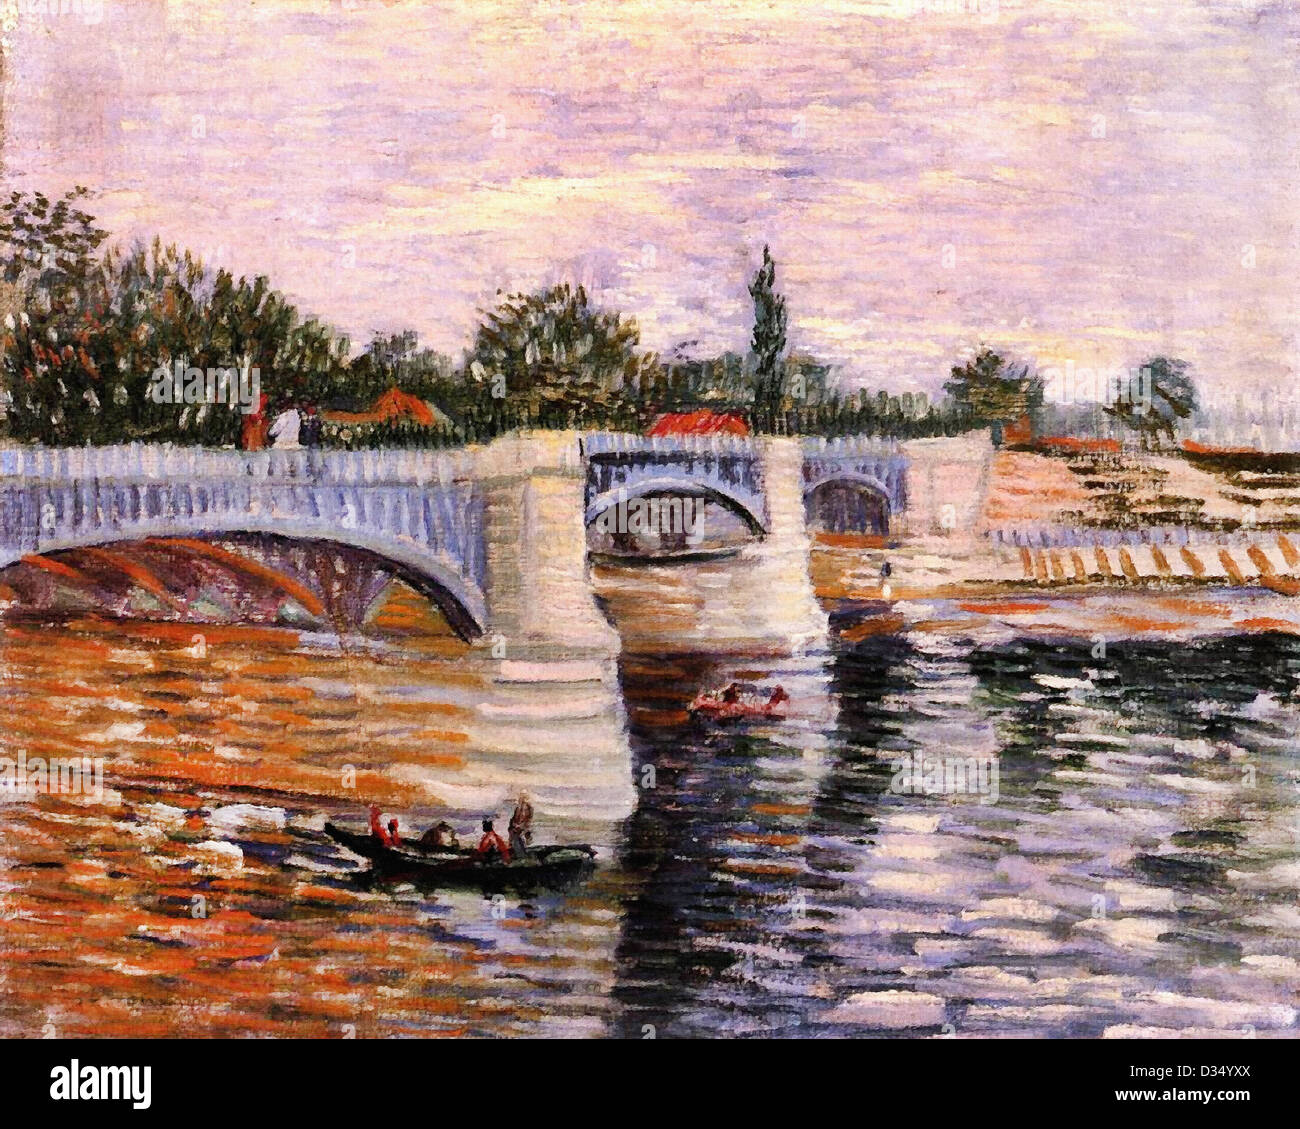 Vincent van Gogh, la Seine avec le Pont de la Grande Jette. 1887. Le postimpressionnisme. Huile sur toile. Musée Van Gogh Banque D'Images